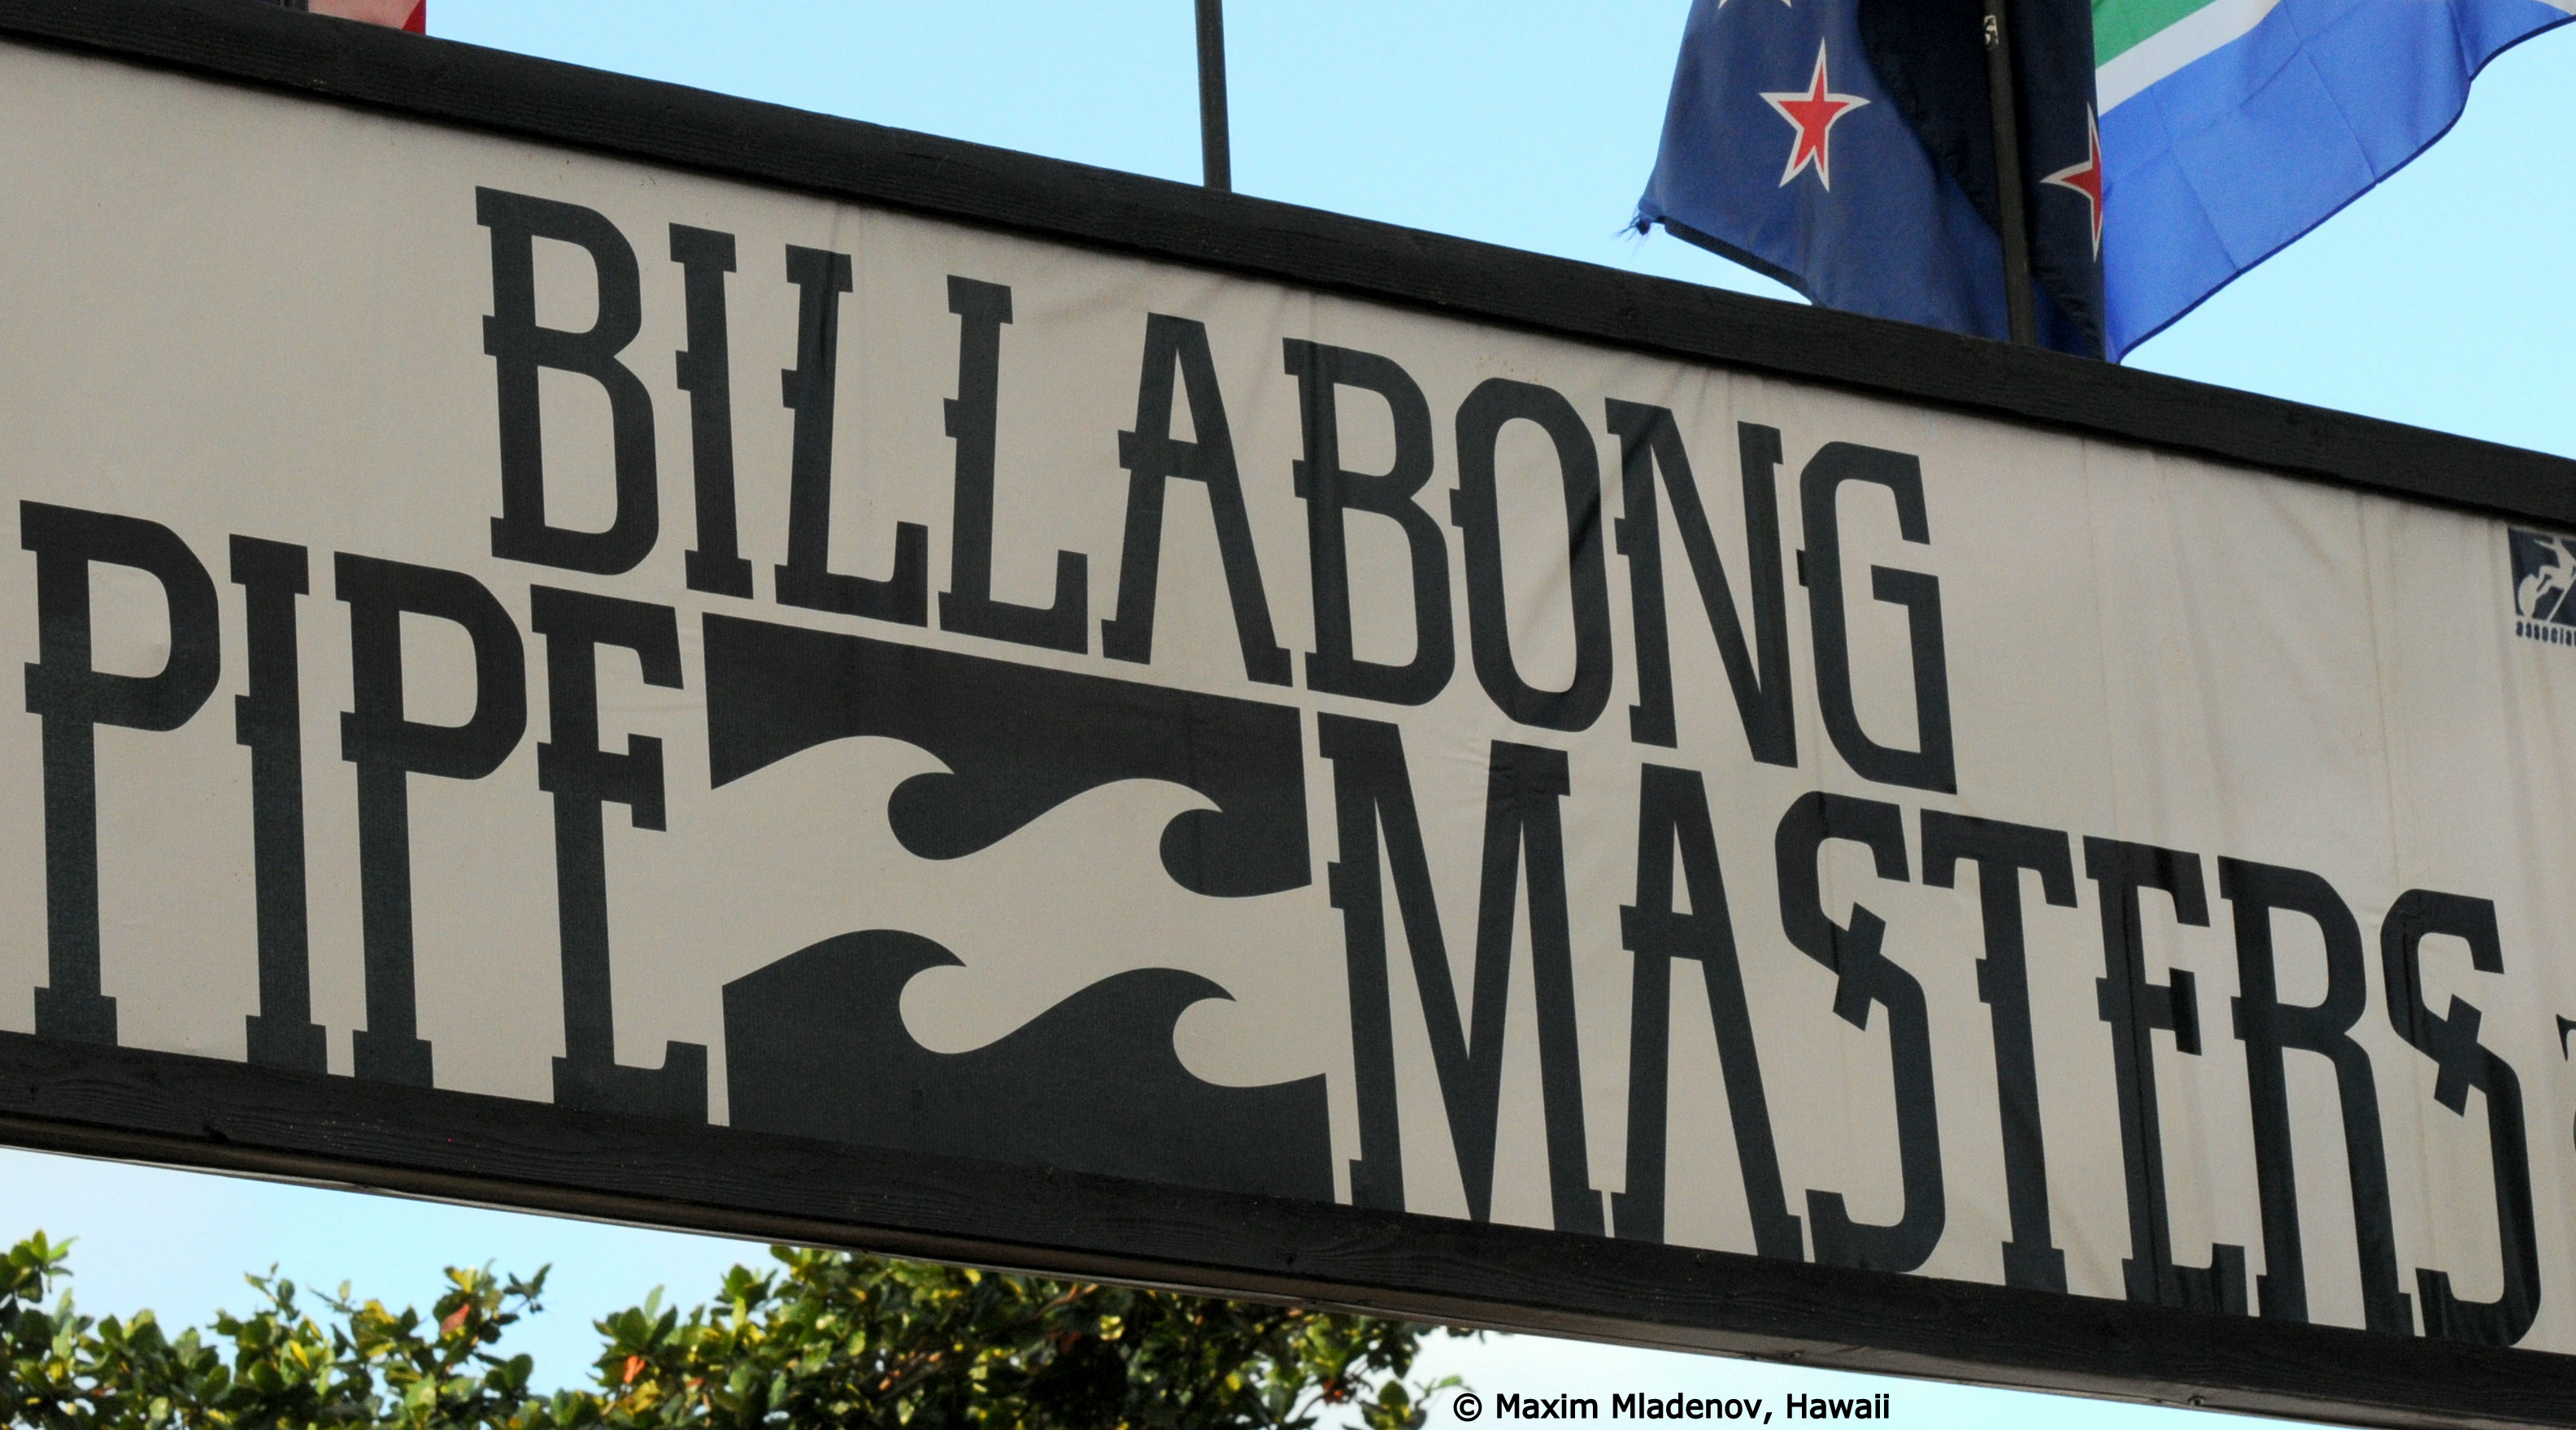 Banderole - Billabong PIPE Masters © Maxim Mladenov, Hawaii